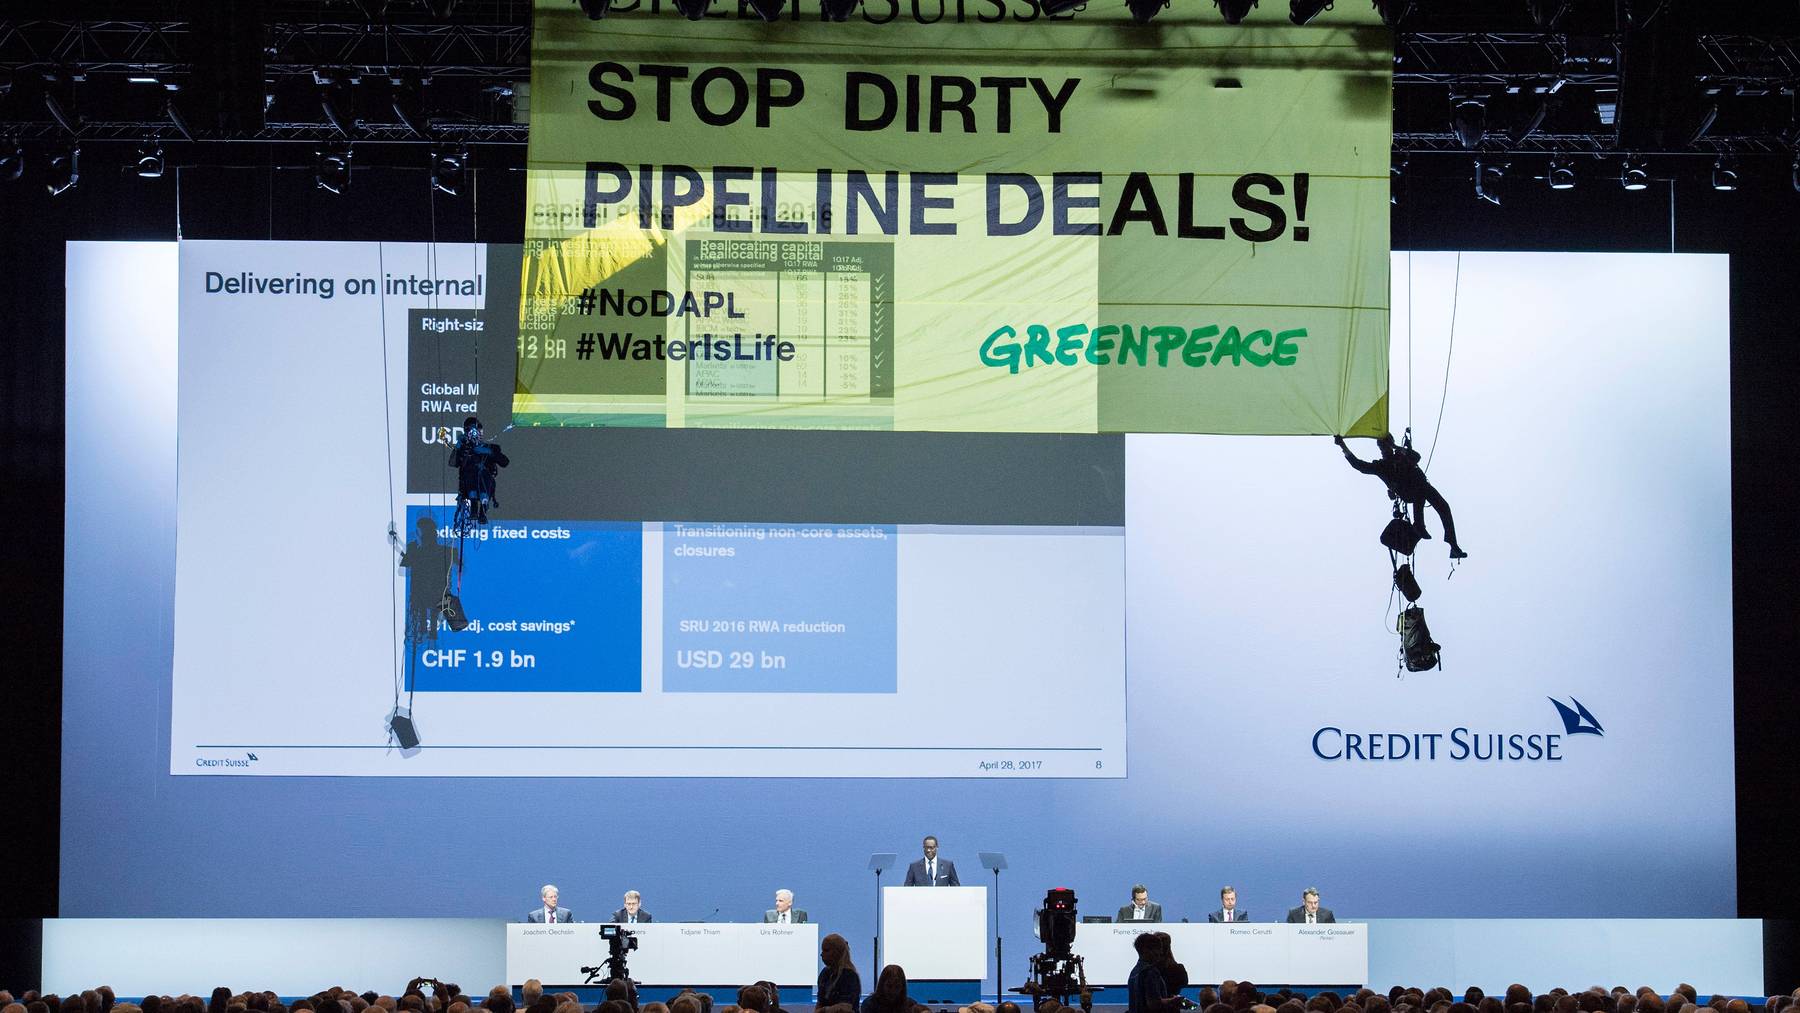 An der Generalversammlung der Credit Suisse im April 2017 hatten sich Aktivisten von Greenpeace mit einem Banner von der Decke abgeseilt.